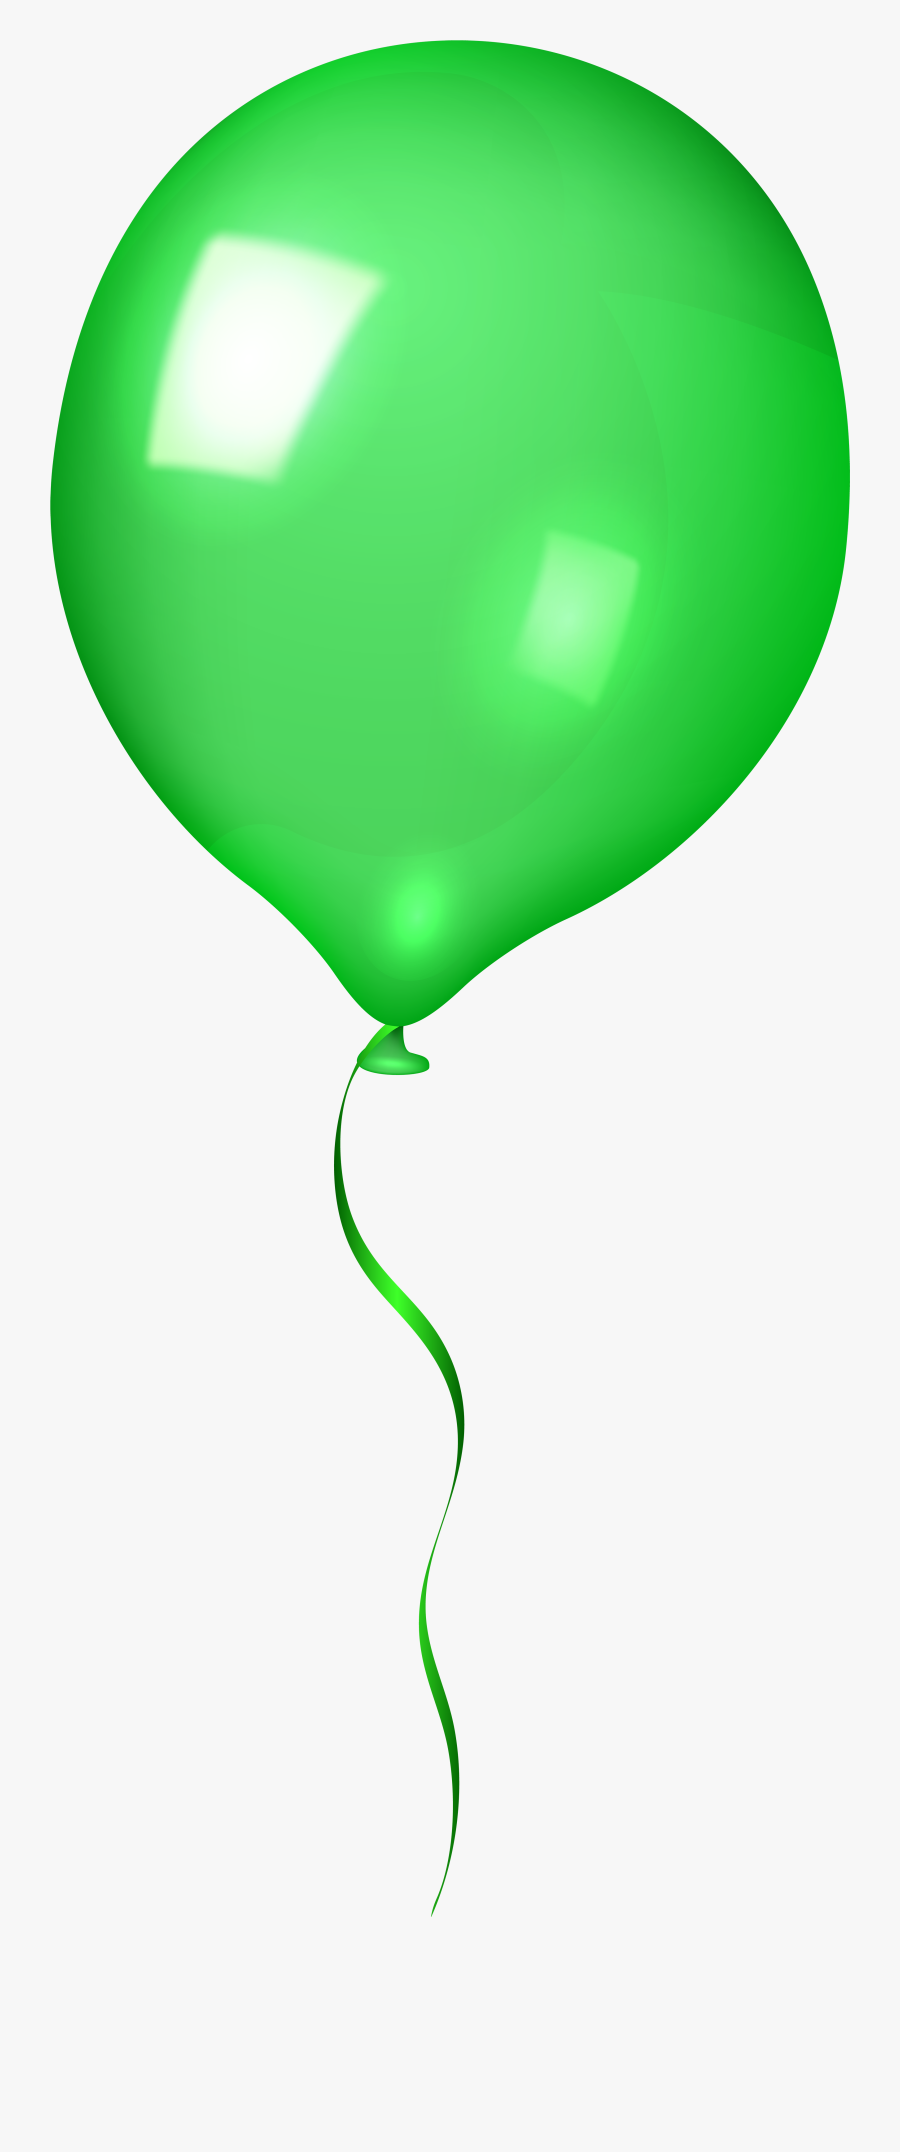 Clipart Balloons Green - Balloon, Transparent Clipart